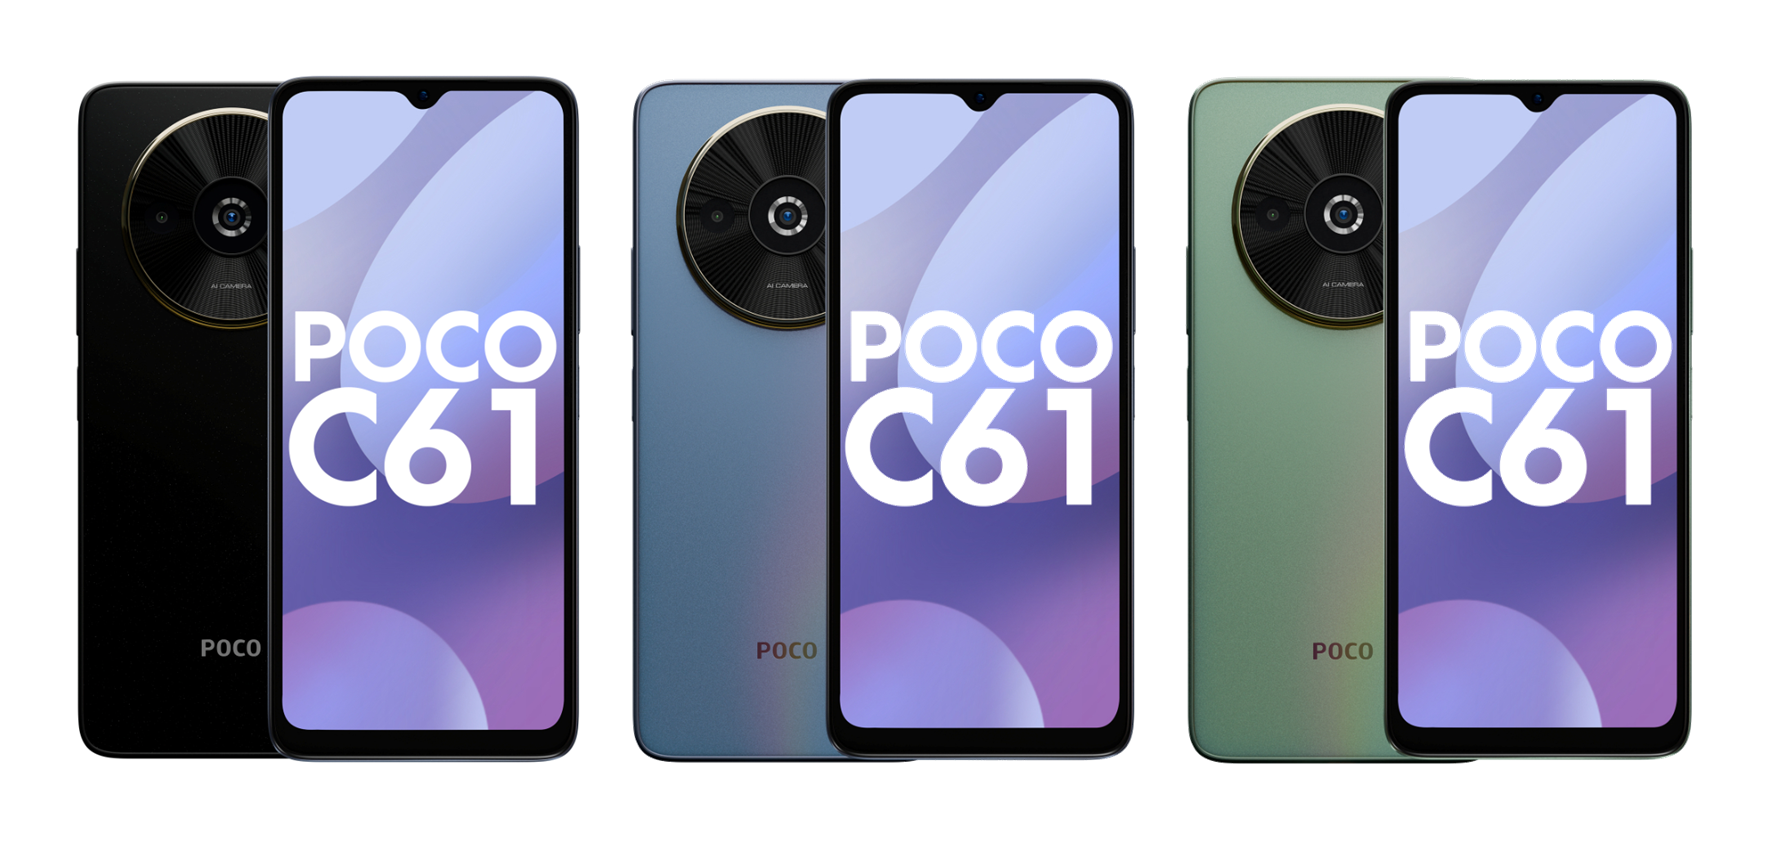 LCD-skjerm på 90 Hz, MediaTek Helio G36-brikke og dobbelt kamera: bilder og detaljer om POCO C61-smarttelefonen har dukket opp på nettet.